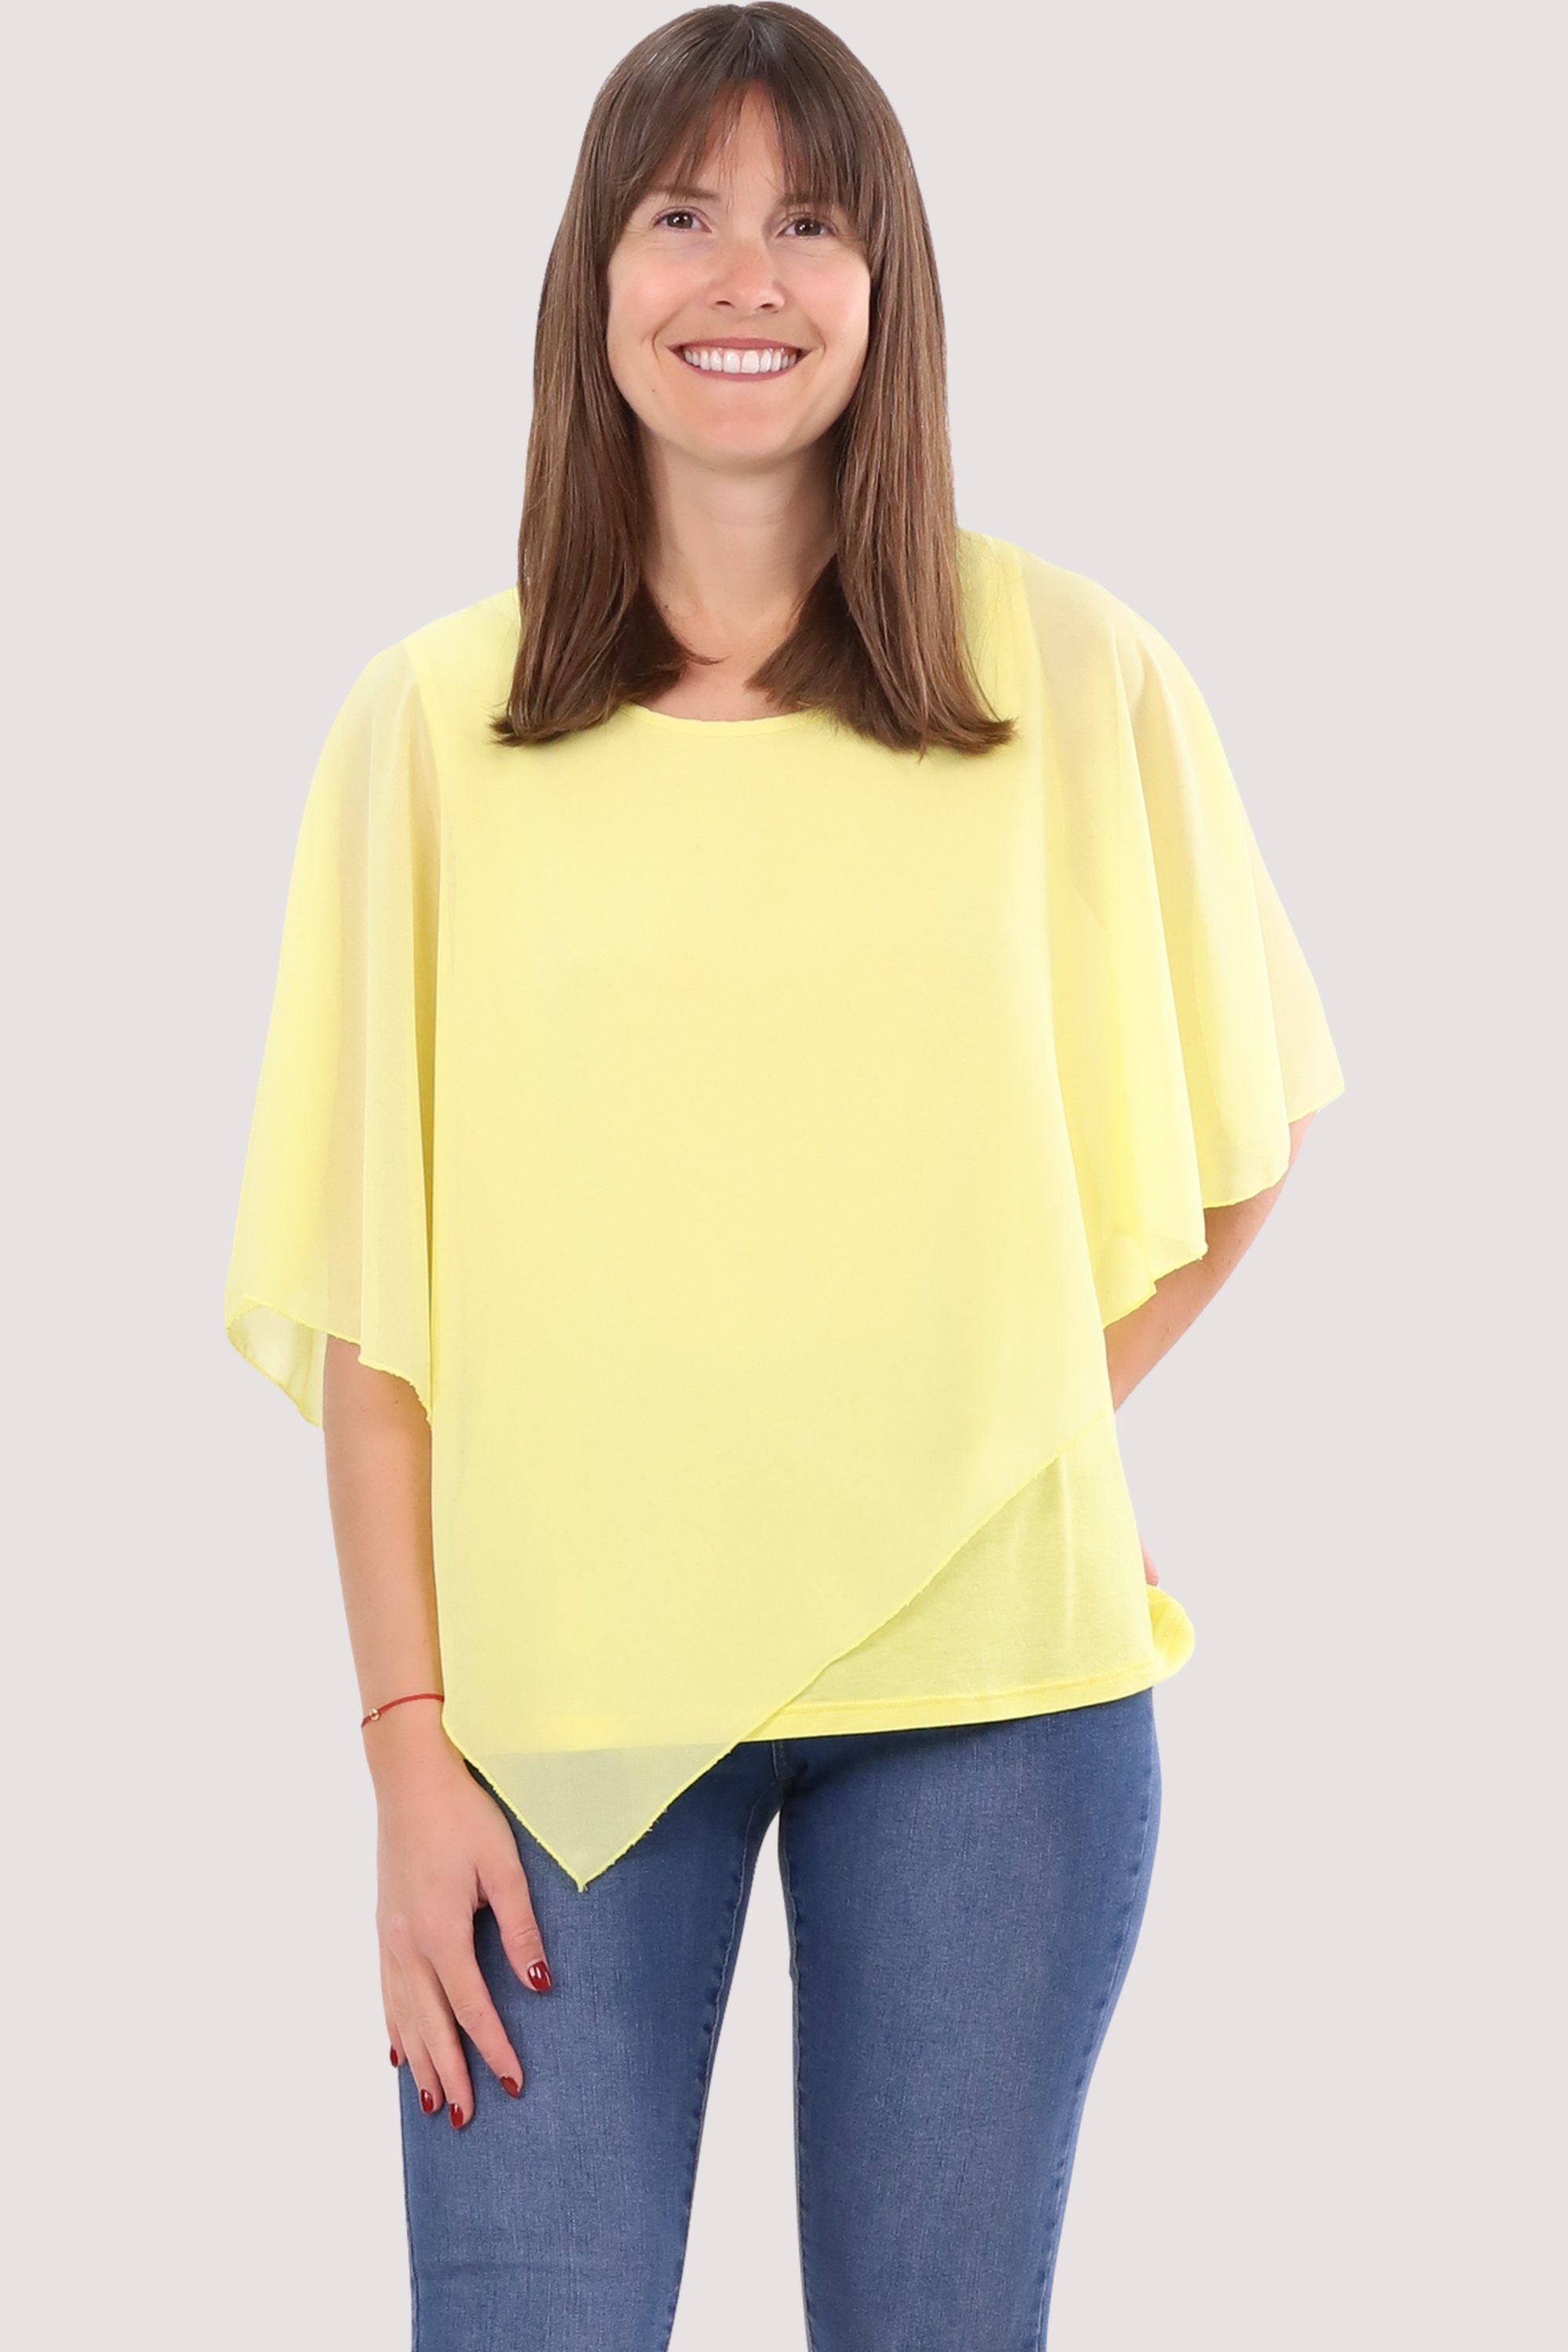 gelb more fashion malito Blusenshirt Chiffonbluse than 10732 geschnitten Schlupfbluse asymmetrisch Einheitsgröße